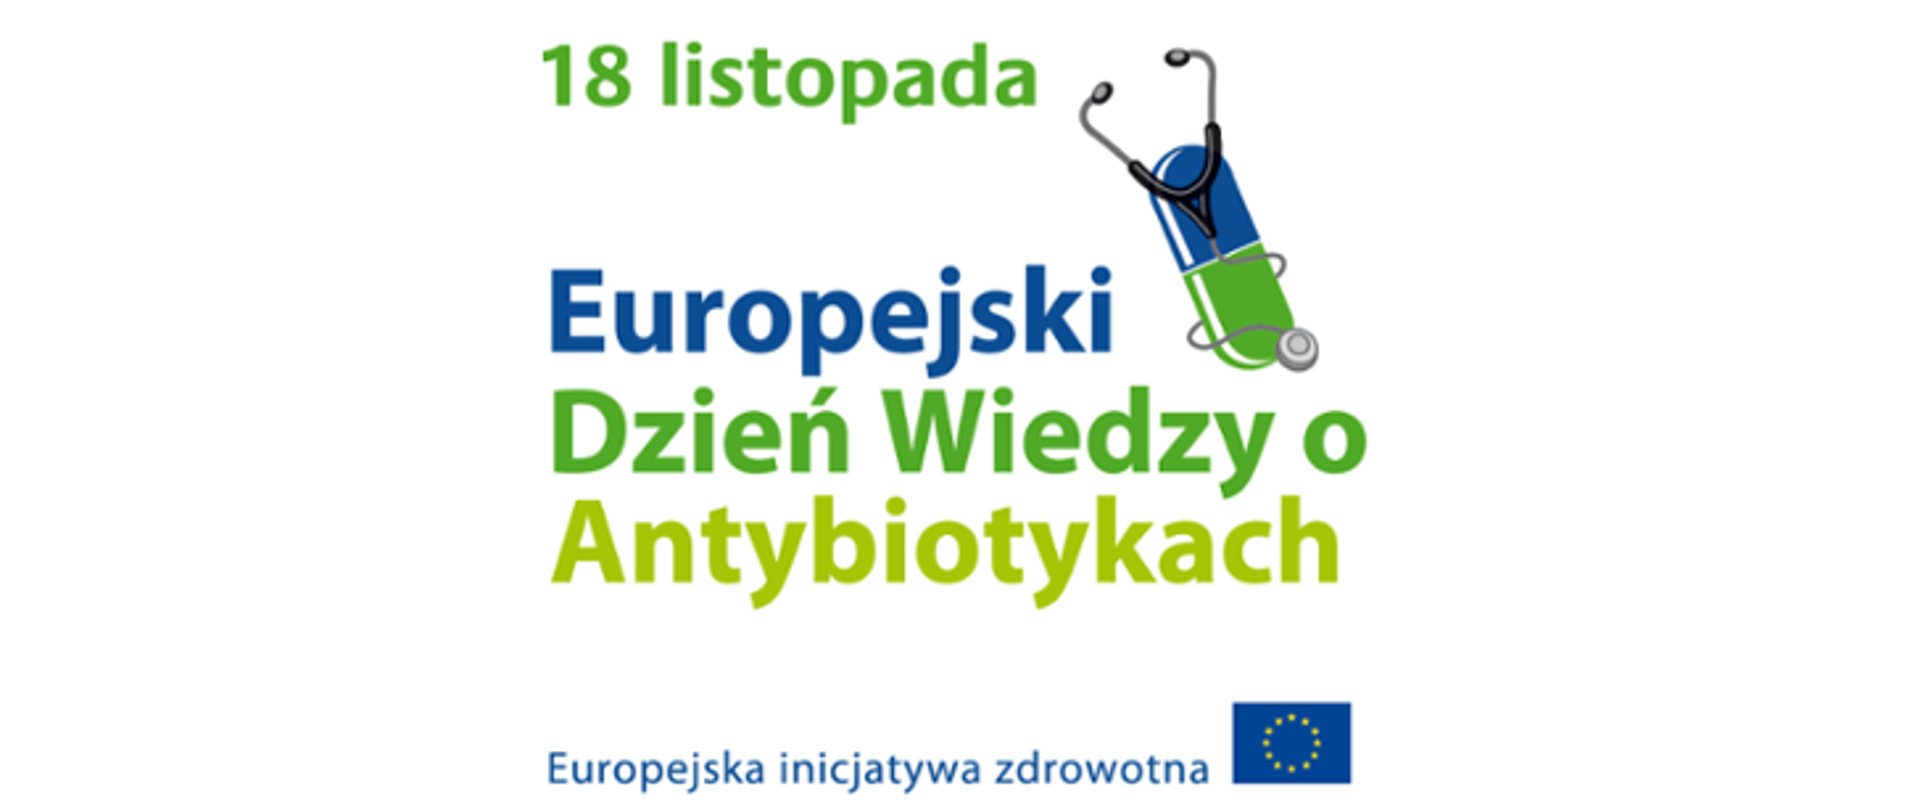 Zielono niebieski napis na białym tle:18 listopada Europejski Dzień Wiedzy o Antybiotykach . Europejska Inicjatywa zdrowotna. Logo Unii Europejskiej